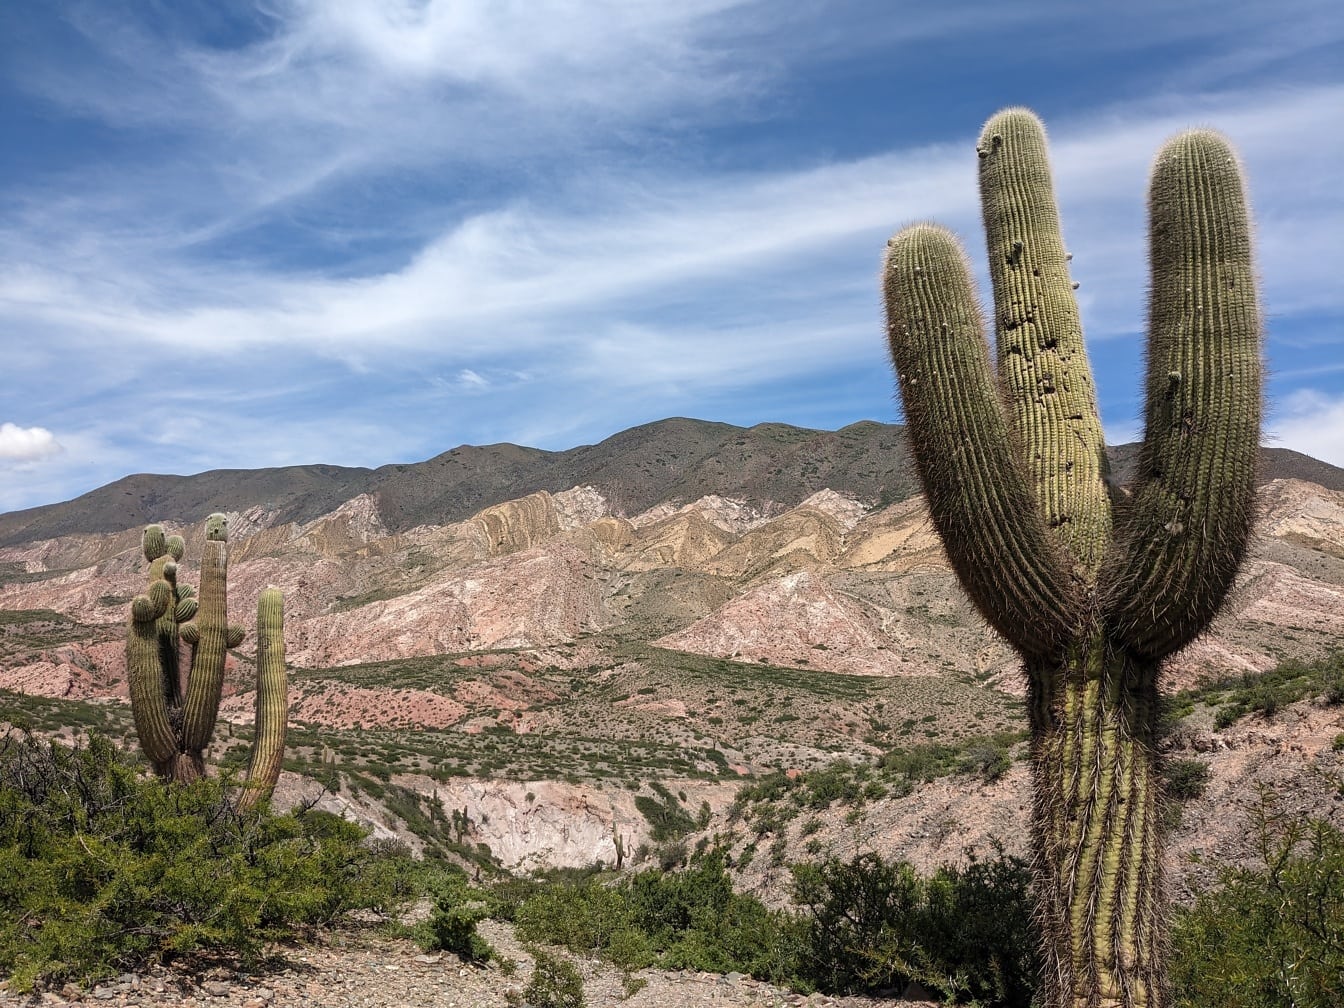 Kaktus Saguaro (Carnegiea gigantea) w pustynnym naturalnym środowisku